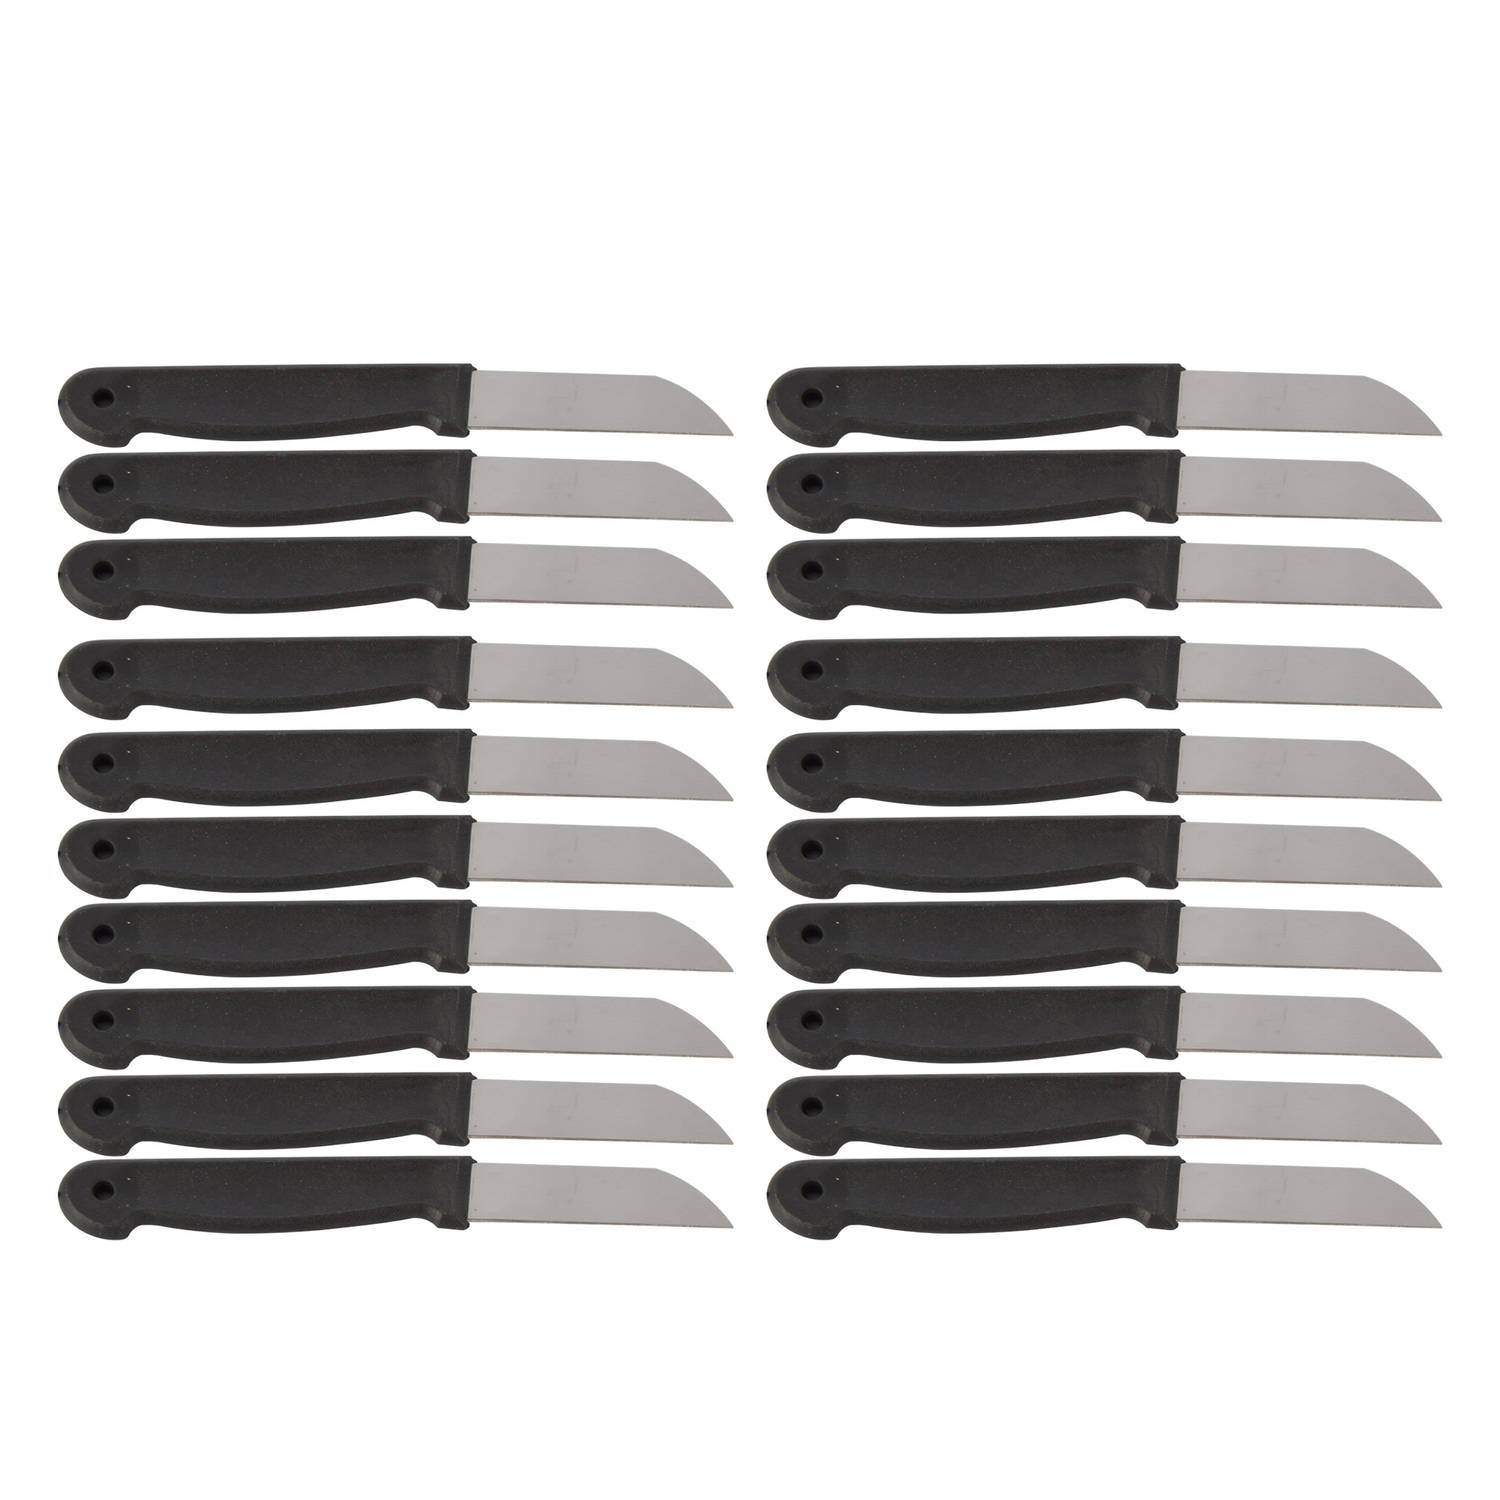 Set van 20 Zwarte Schilmesjes - Roestvrij Staal en Plastic - Keukenaccessoires voor Koken & Klussen | 16cm Lang Messenset